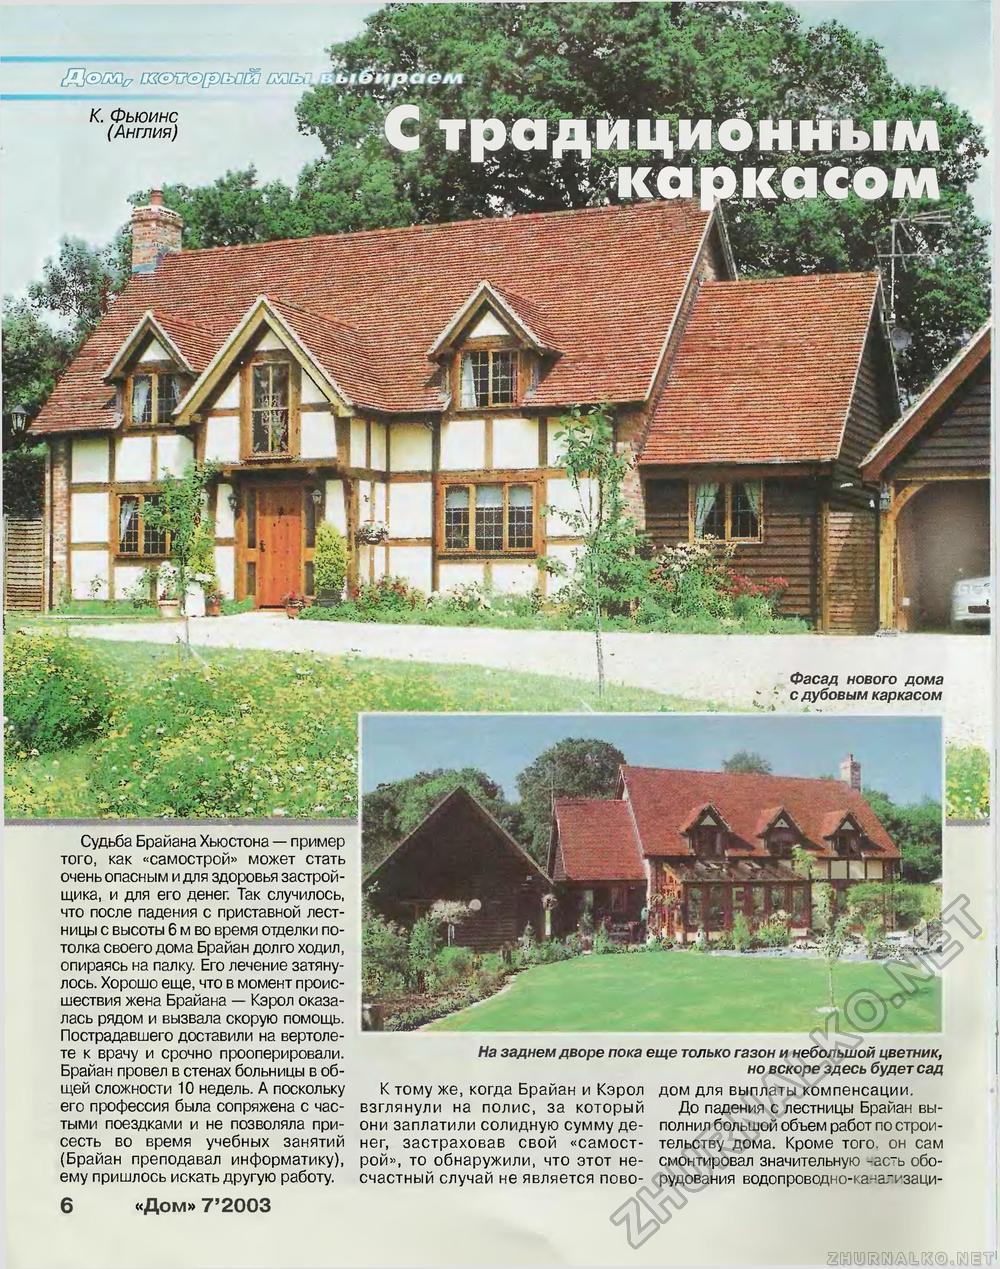 Дом 2003-07, страница 6